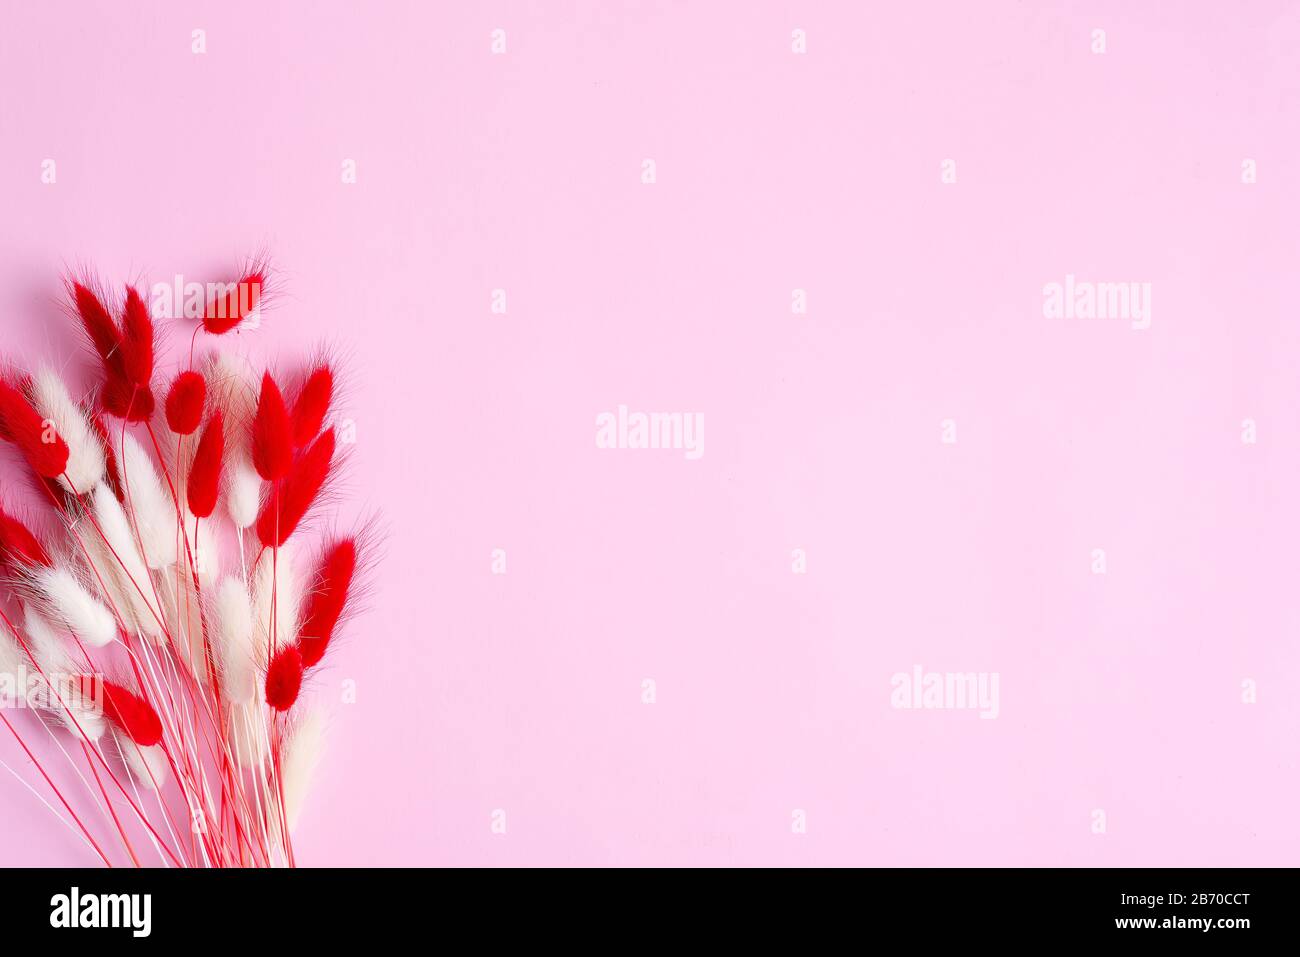 Carta di congratulazioni con fiori rossi e bianchi morbidi asciutti Lagurus Ovatus o Rabbit Tail Grass su sfondo rosa pastello, spazio copia. Foto Stock